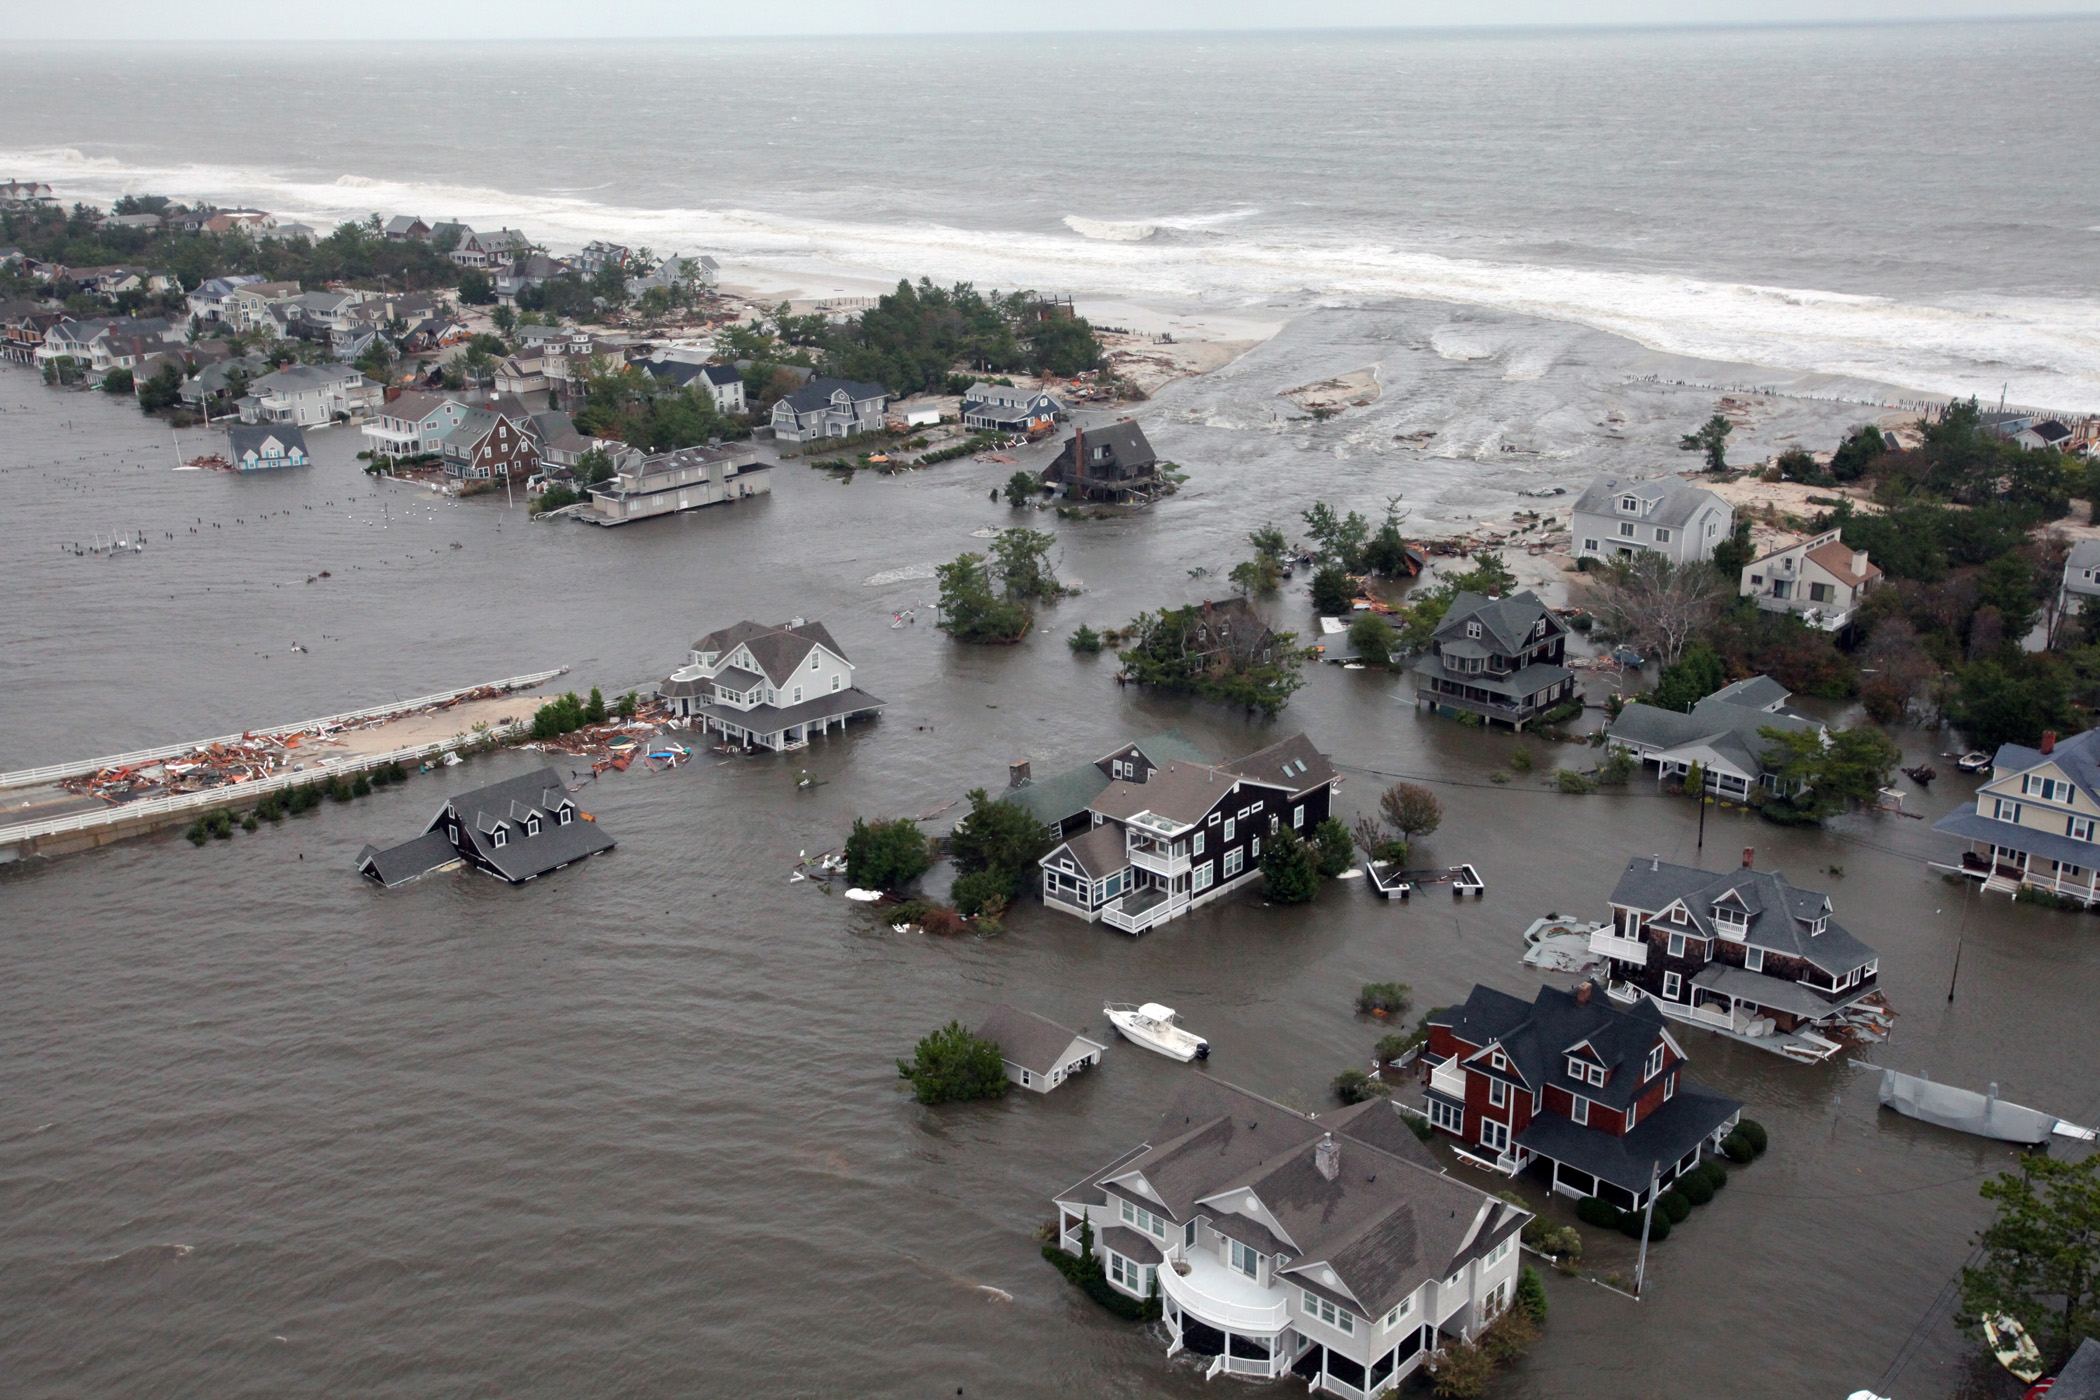 Wirbelsturm Sandy und seine Folgen für New Jersey